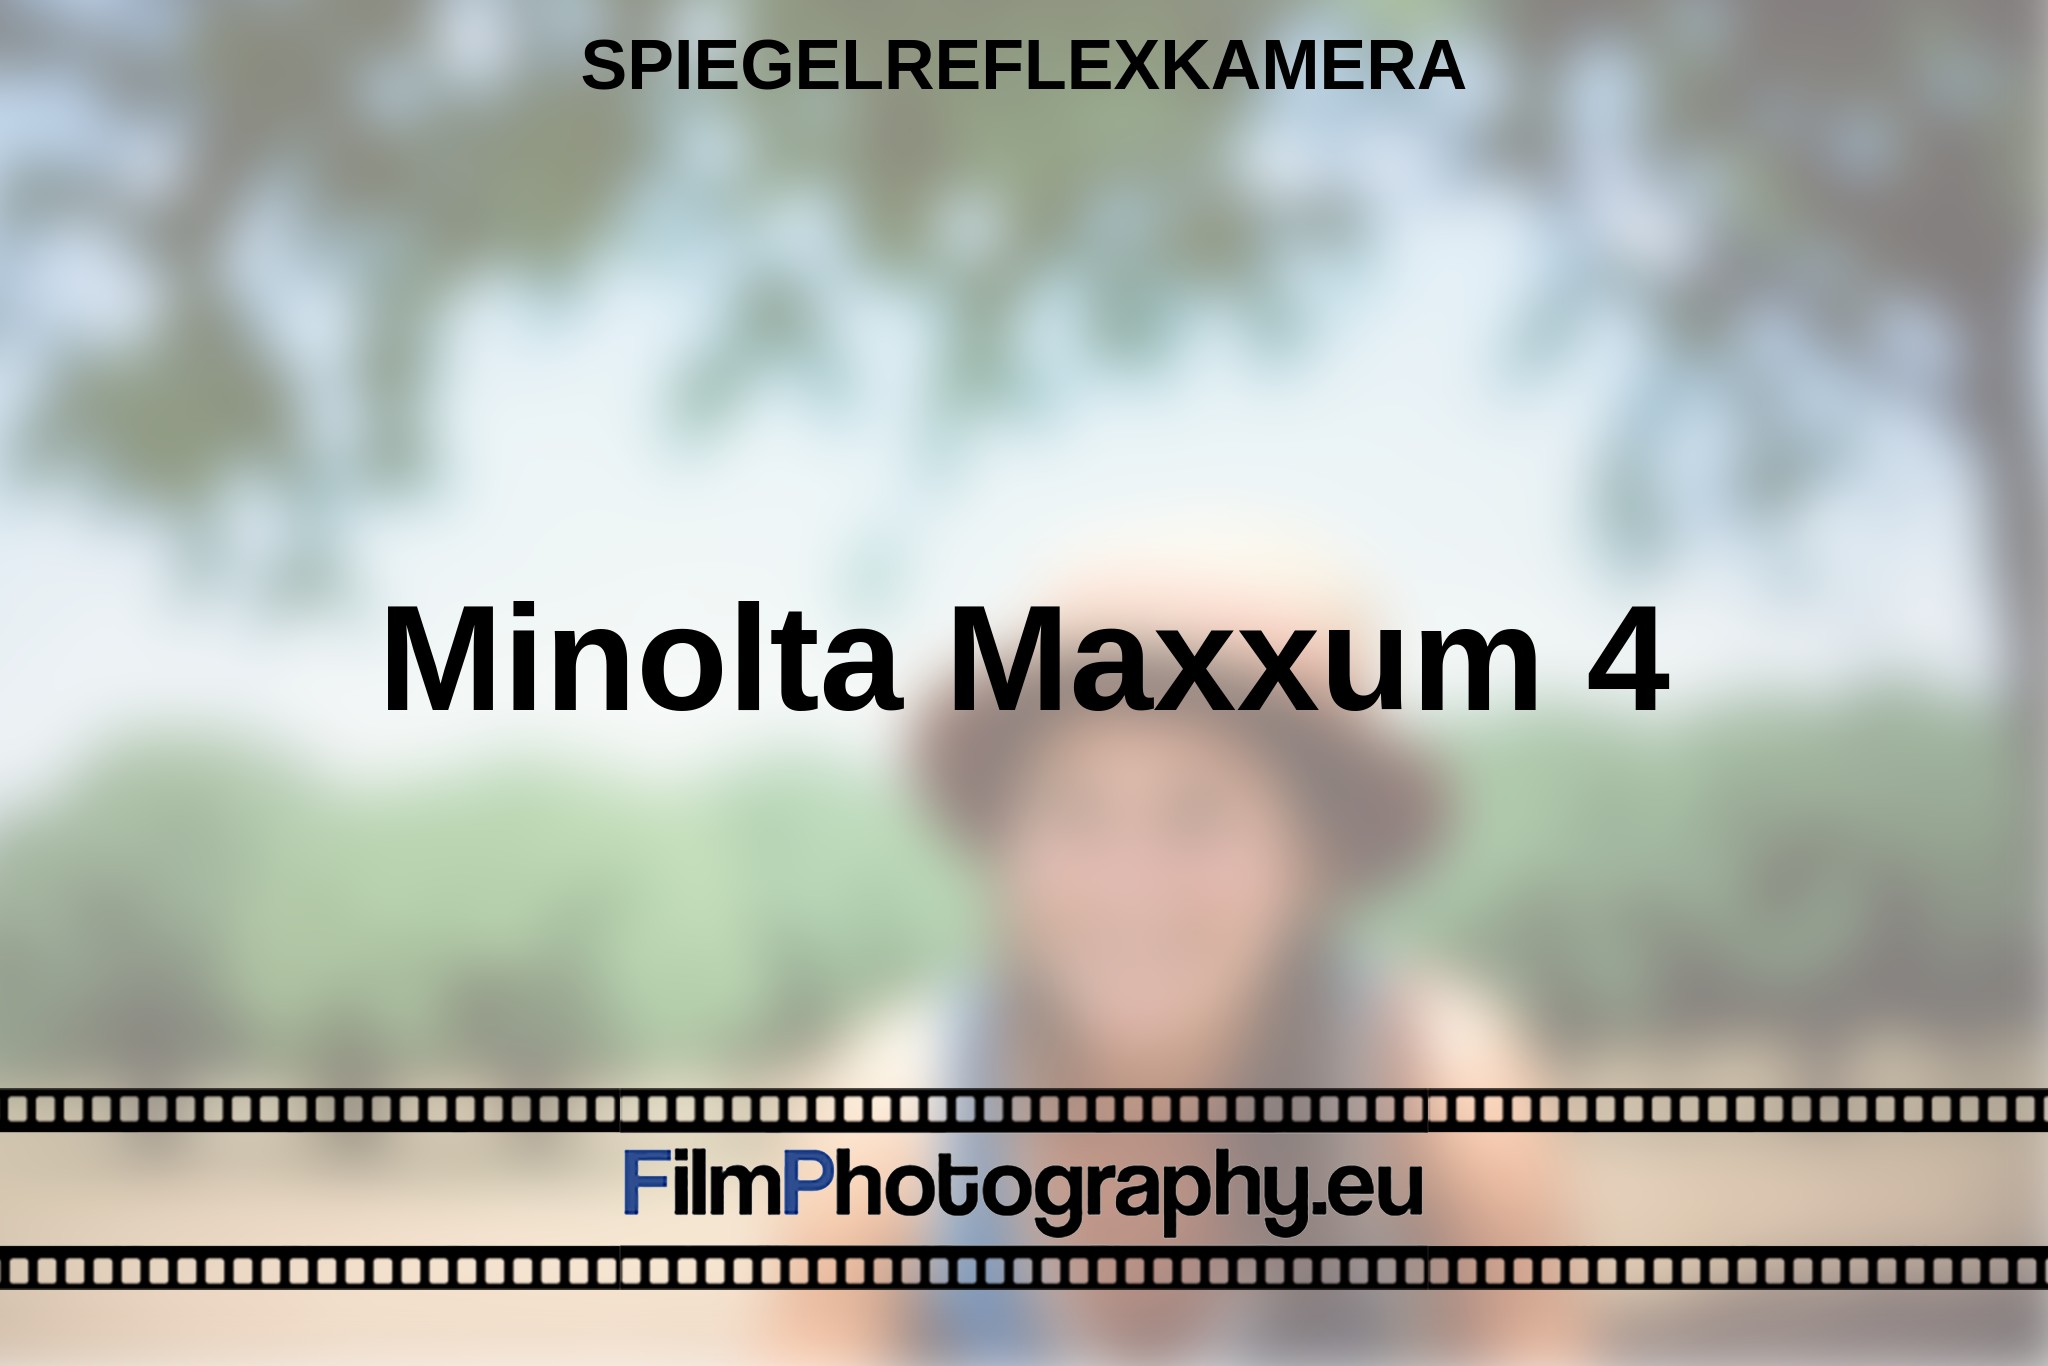 minolta-maxxum-4-spiegelreflexkamera-bnv.jpg